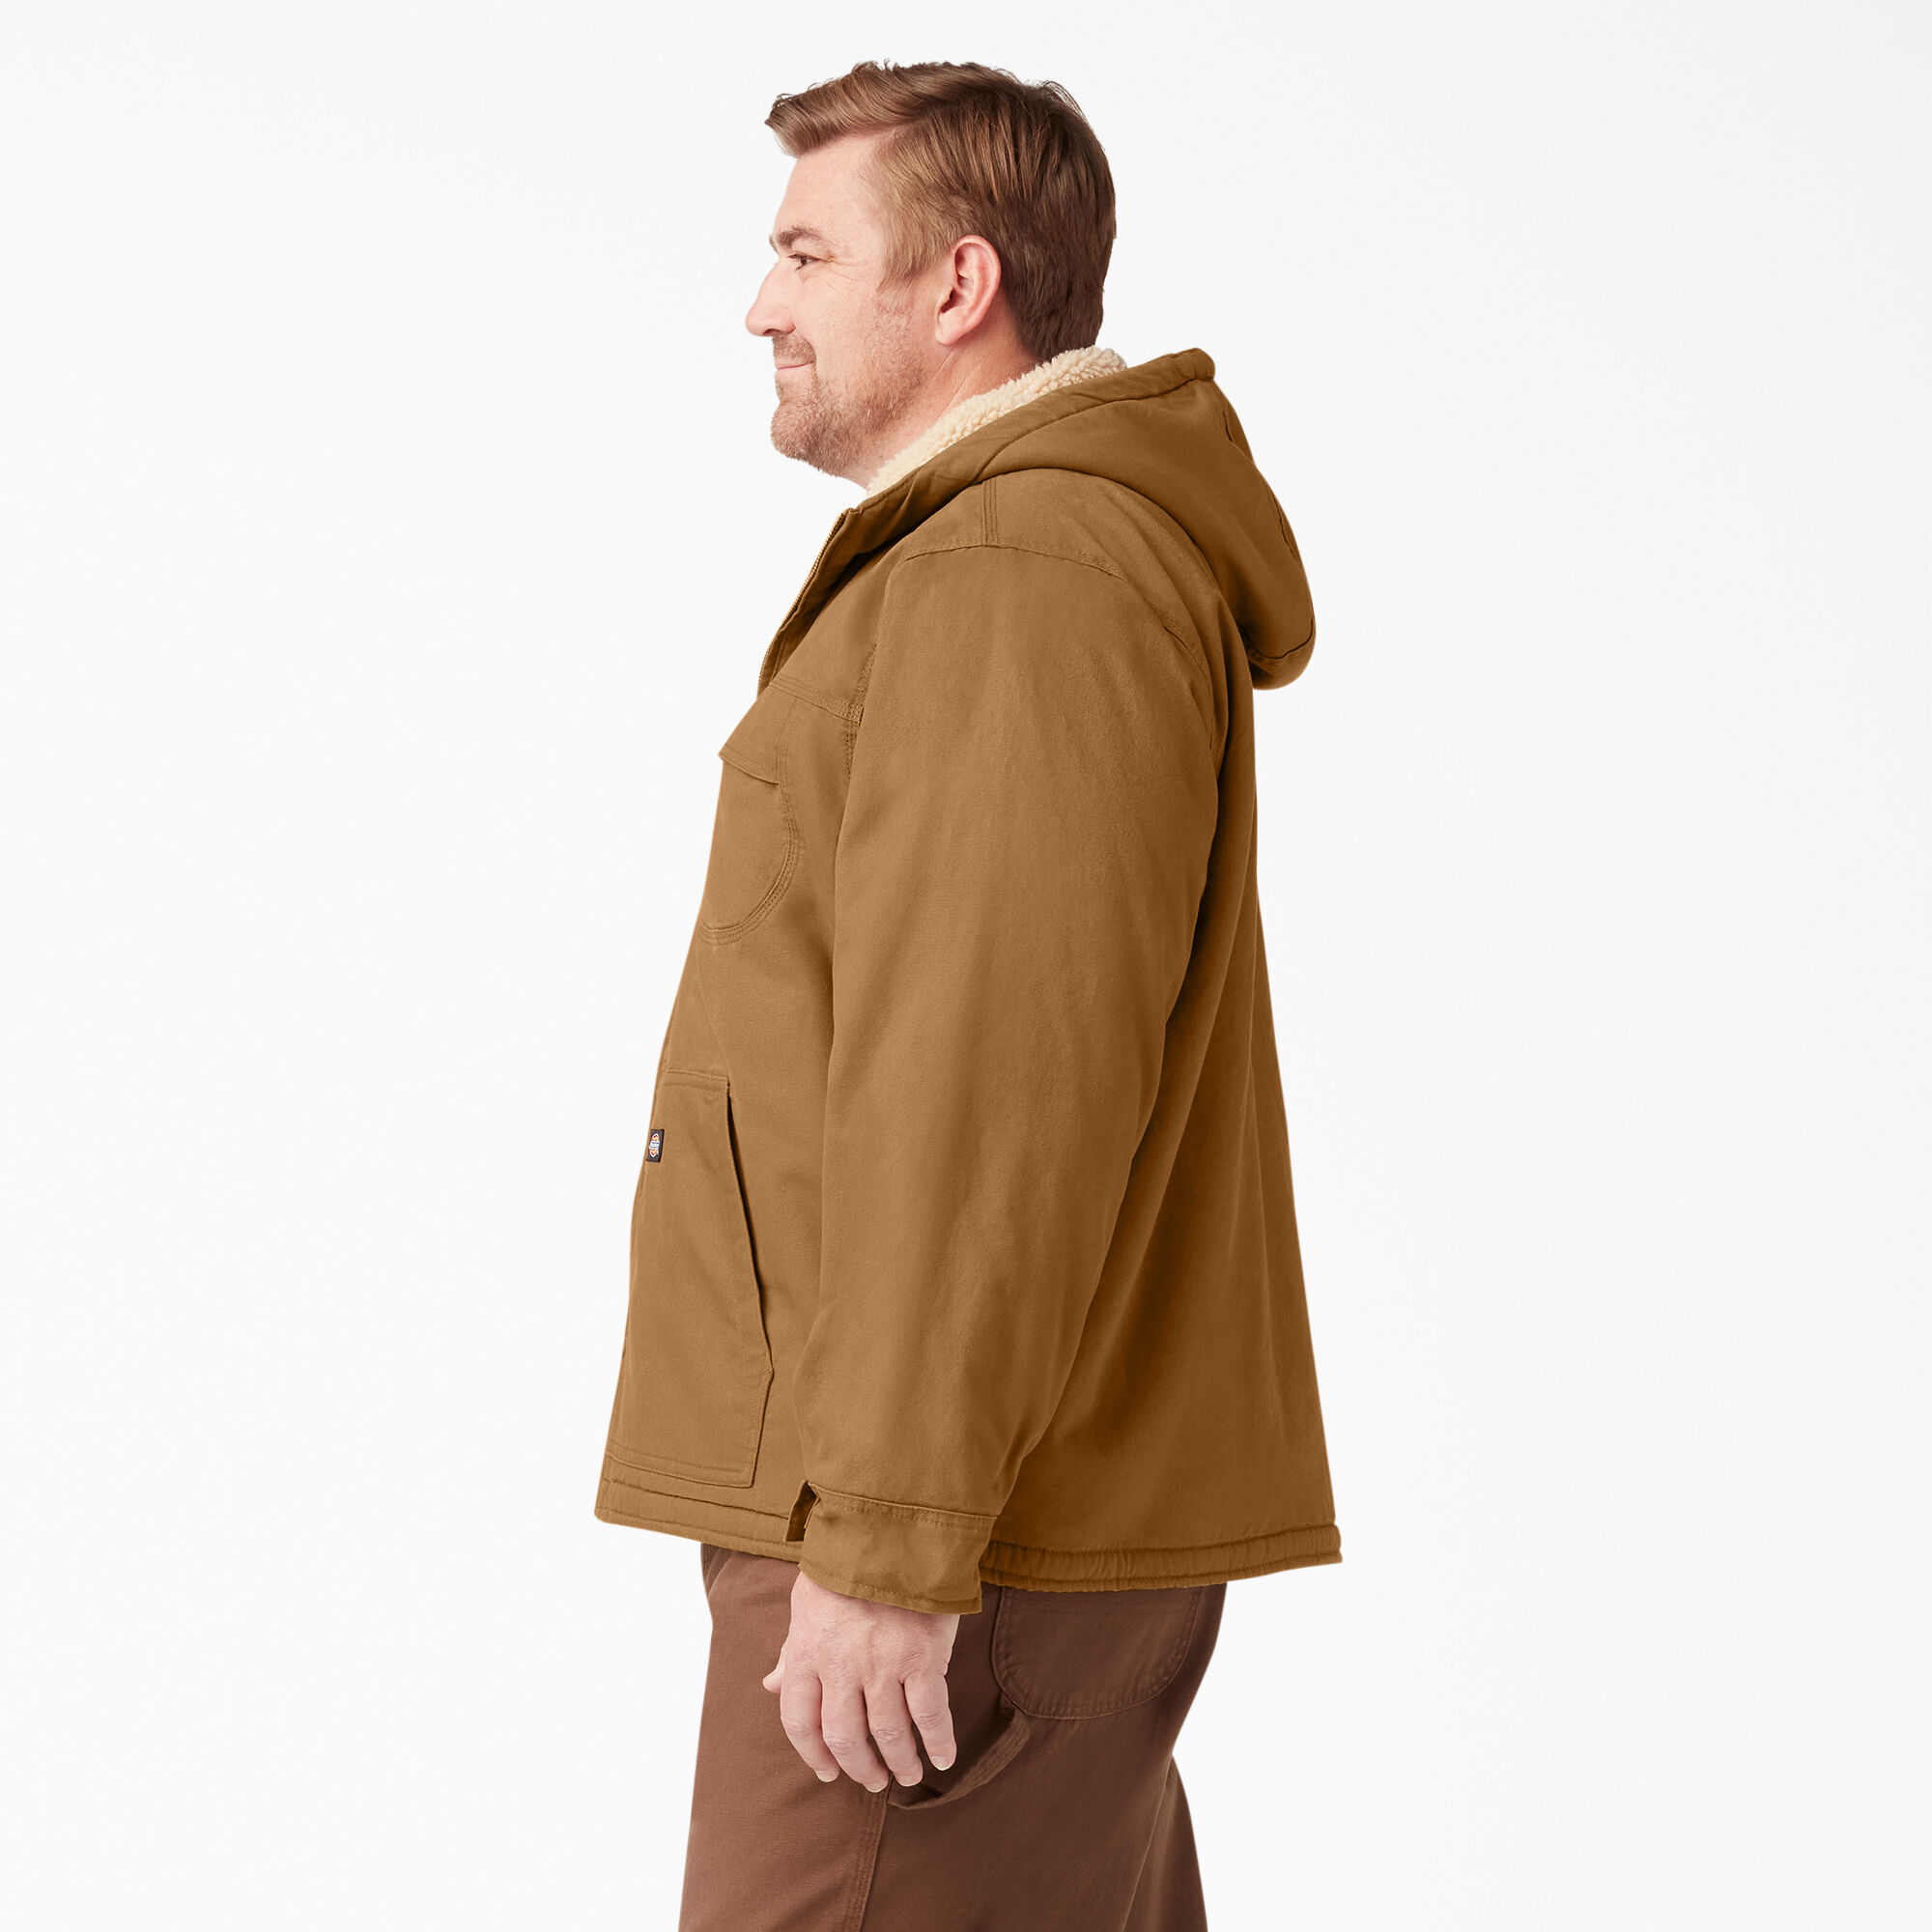 Duck Sherpa Lined Hooded Jacket for Men | Dickies - Dickies US